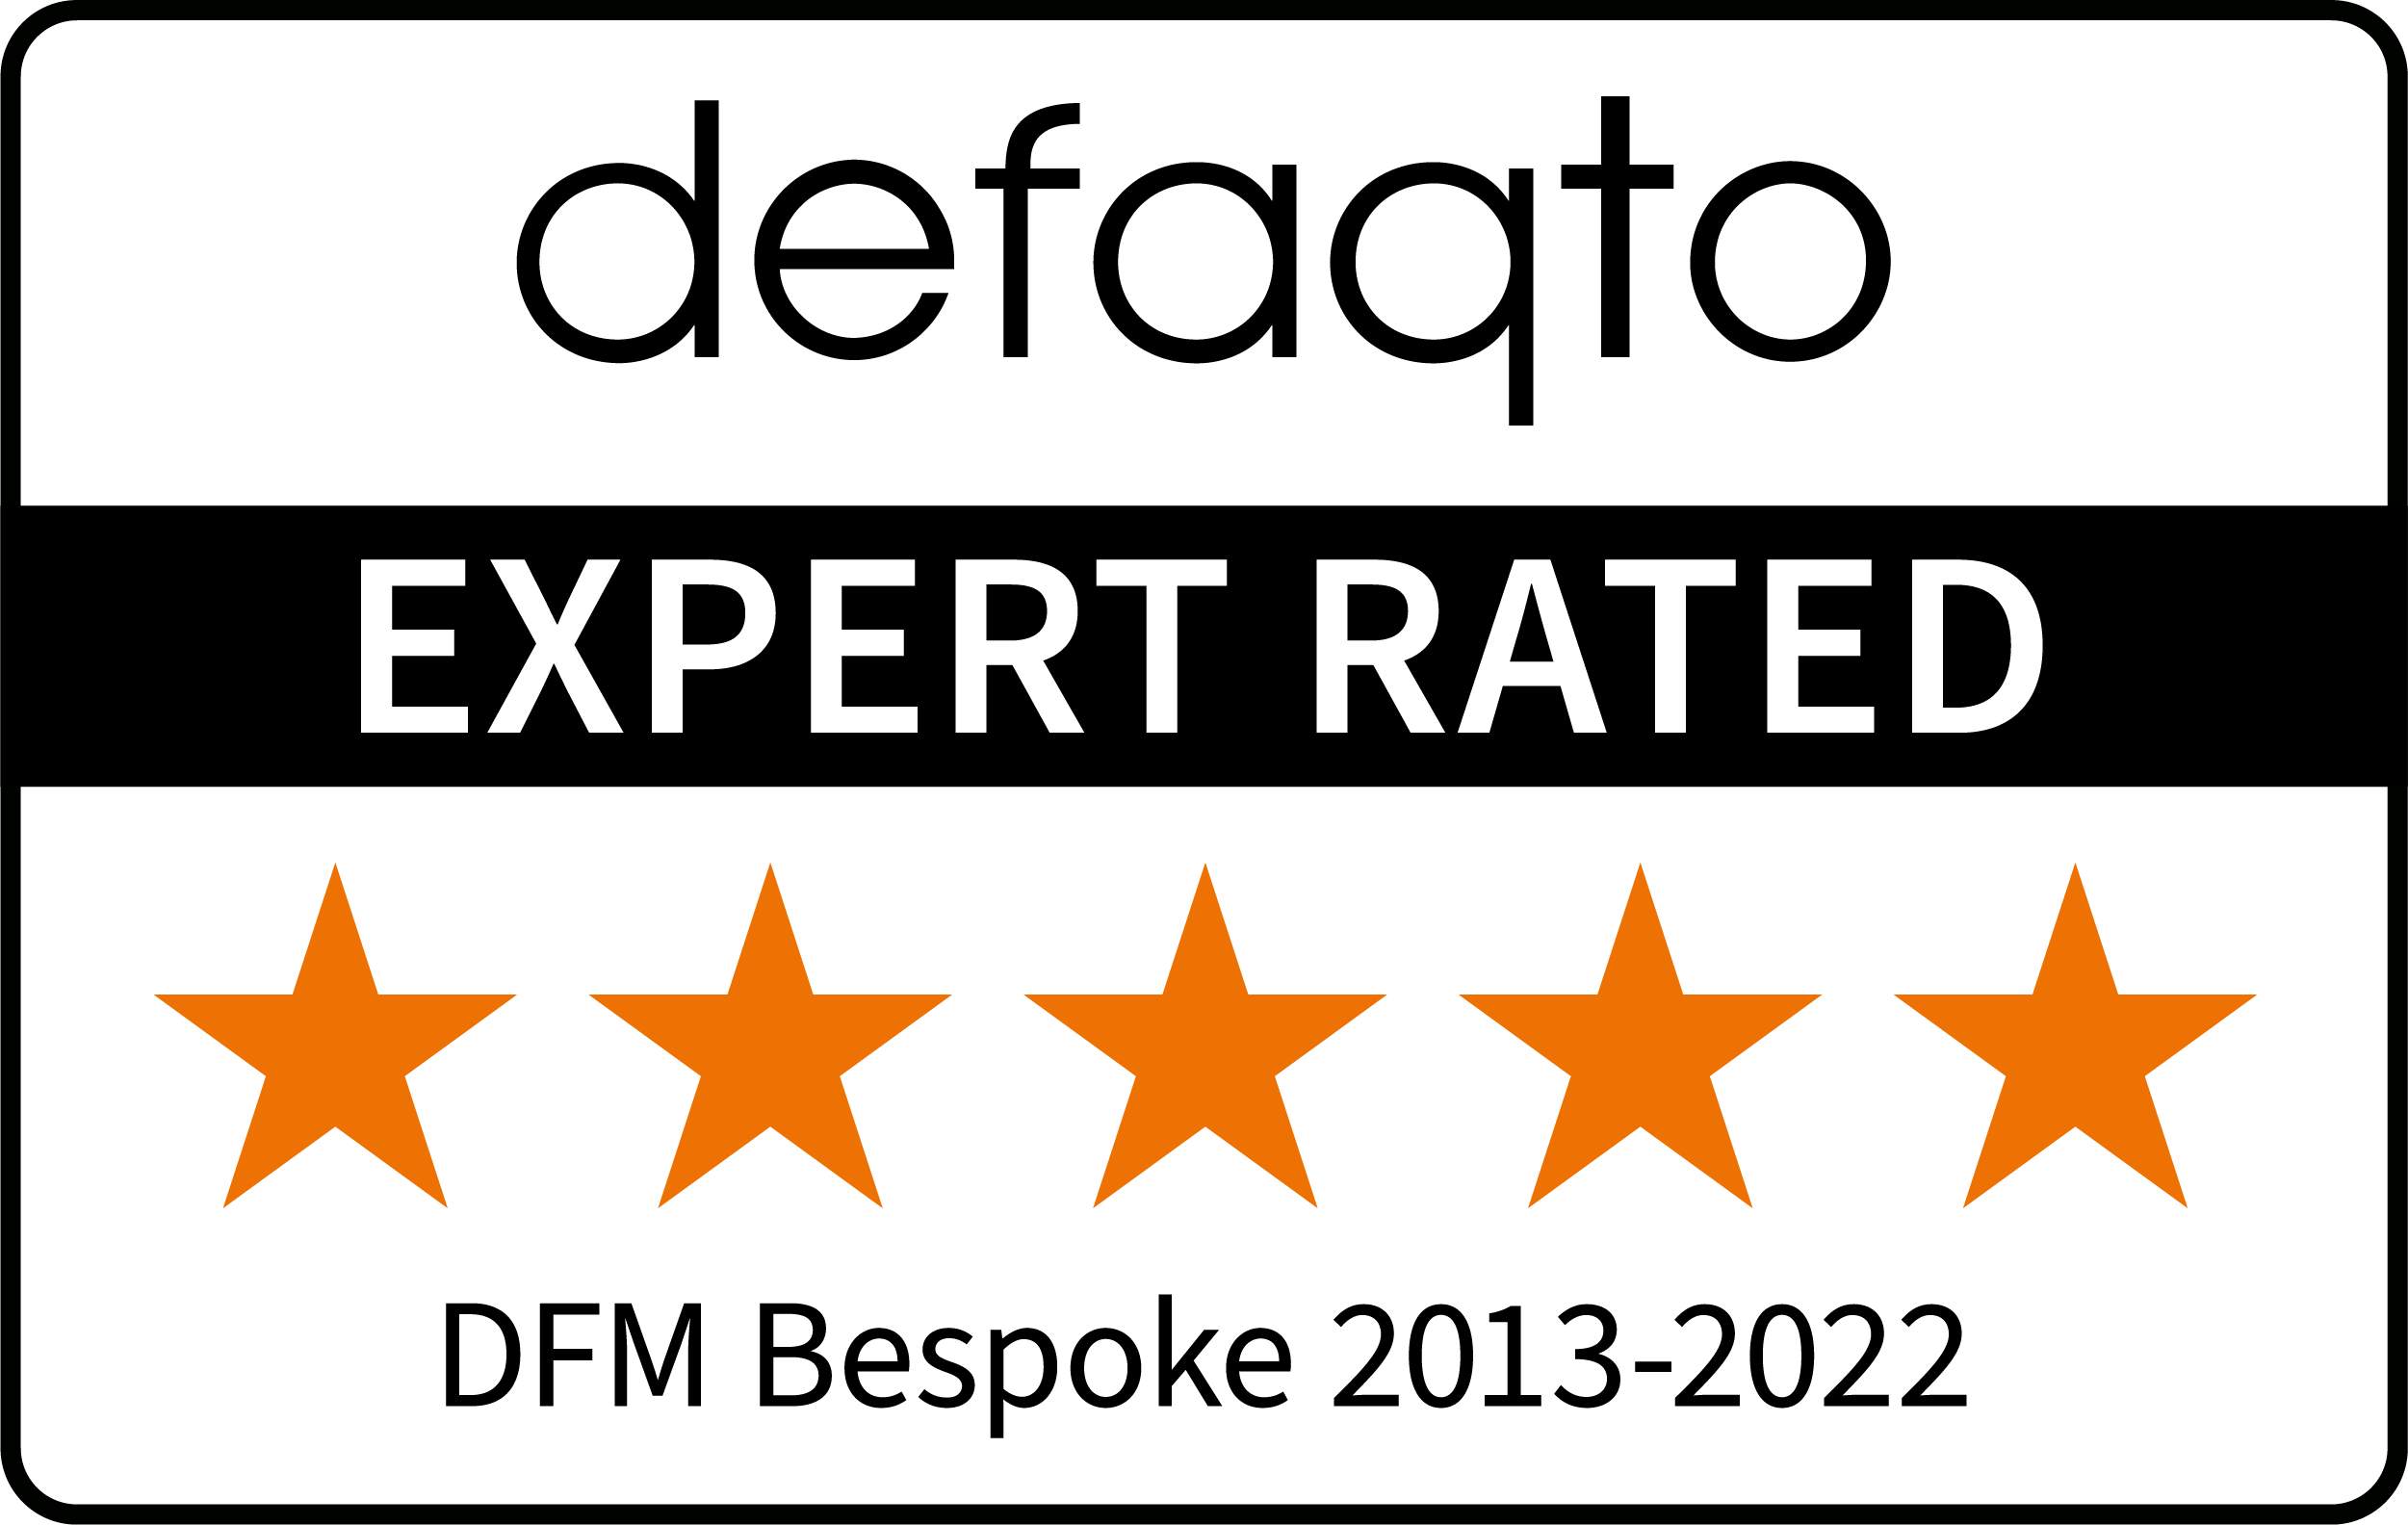 5 star rating award for DFM Bespoke from defaqto